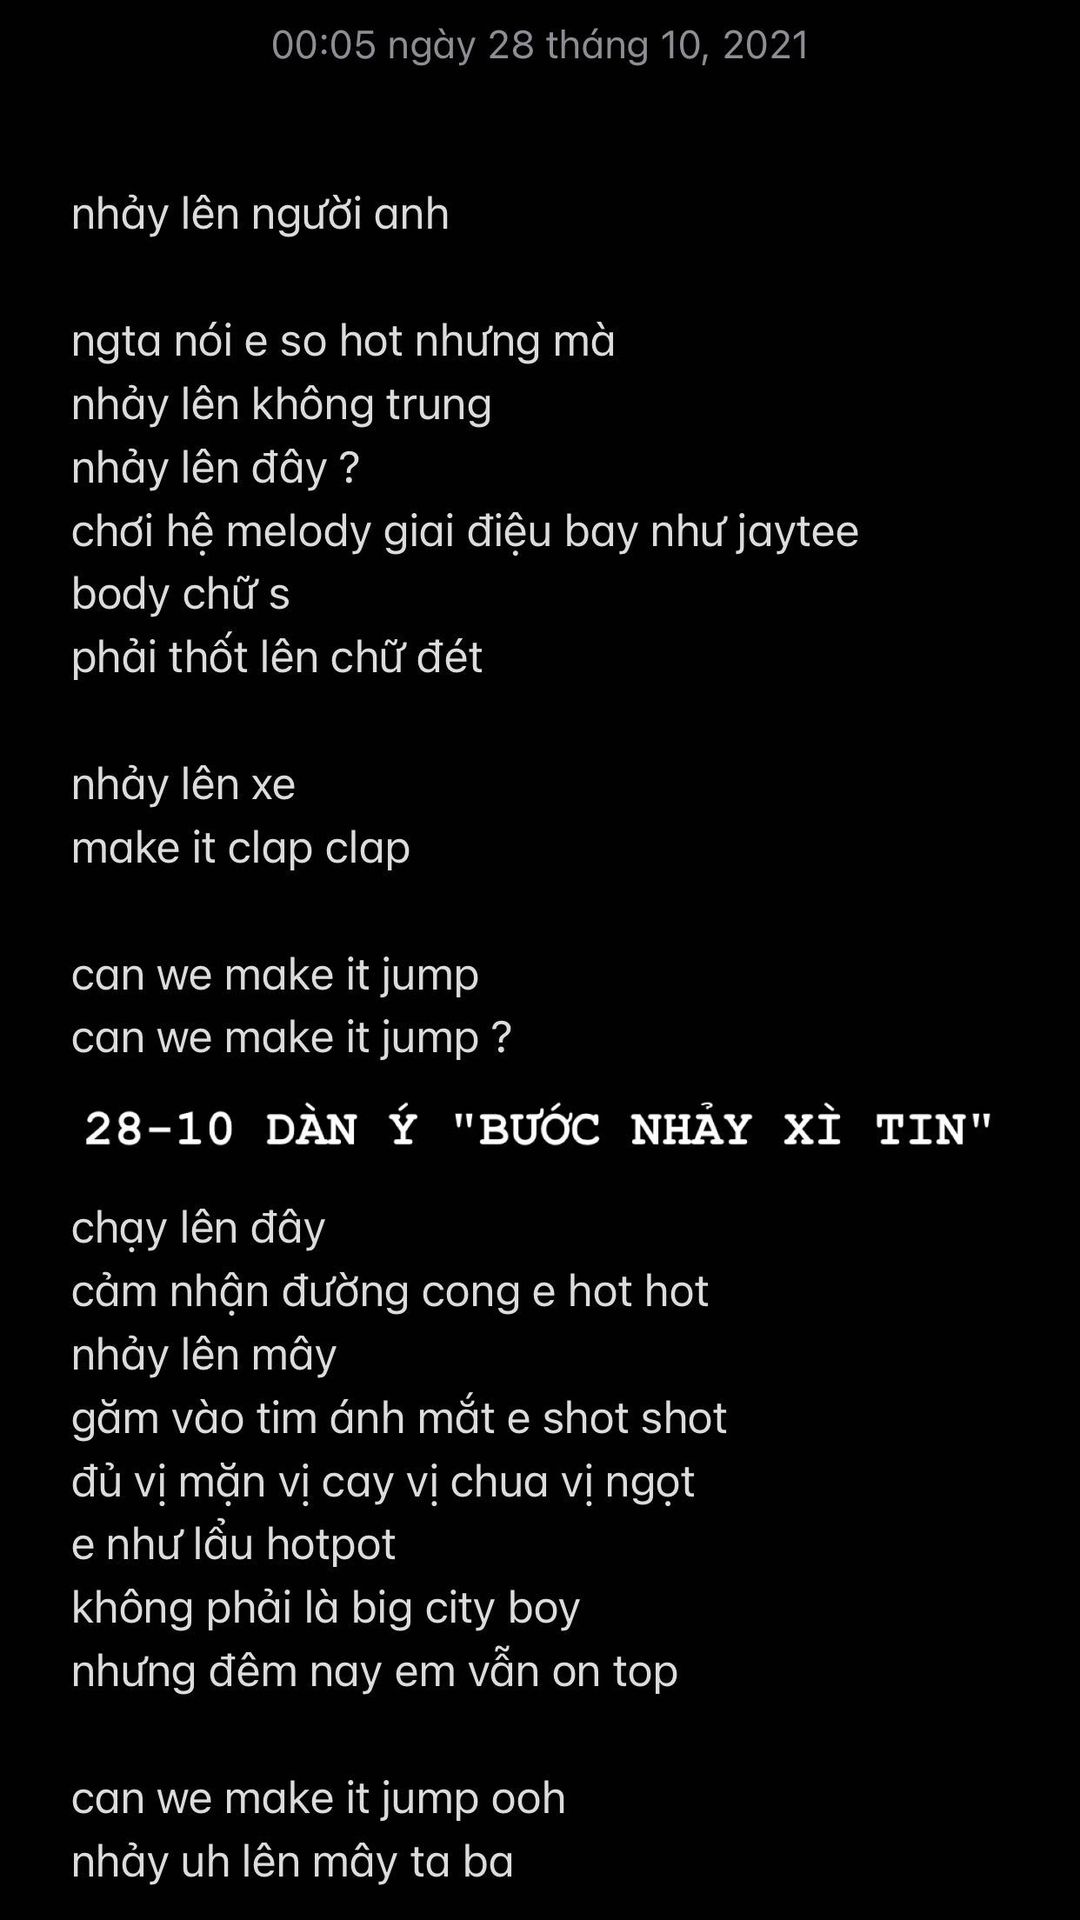 Vừa hết Rap Việt, học trò Binz tung bằng chứng tố công ty cũ bịa đặt, công khai giấy đề nghị thanh toán đội giá gấp đôi  - Ảnh 7.